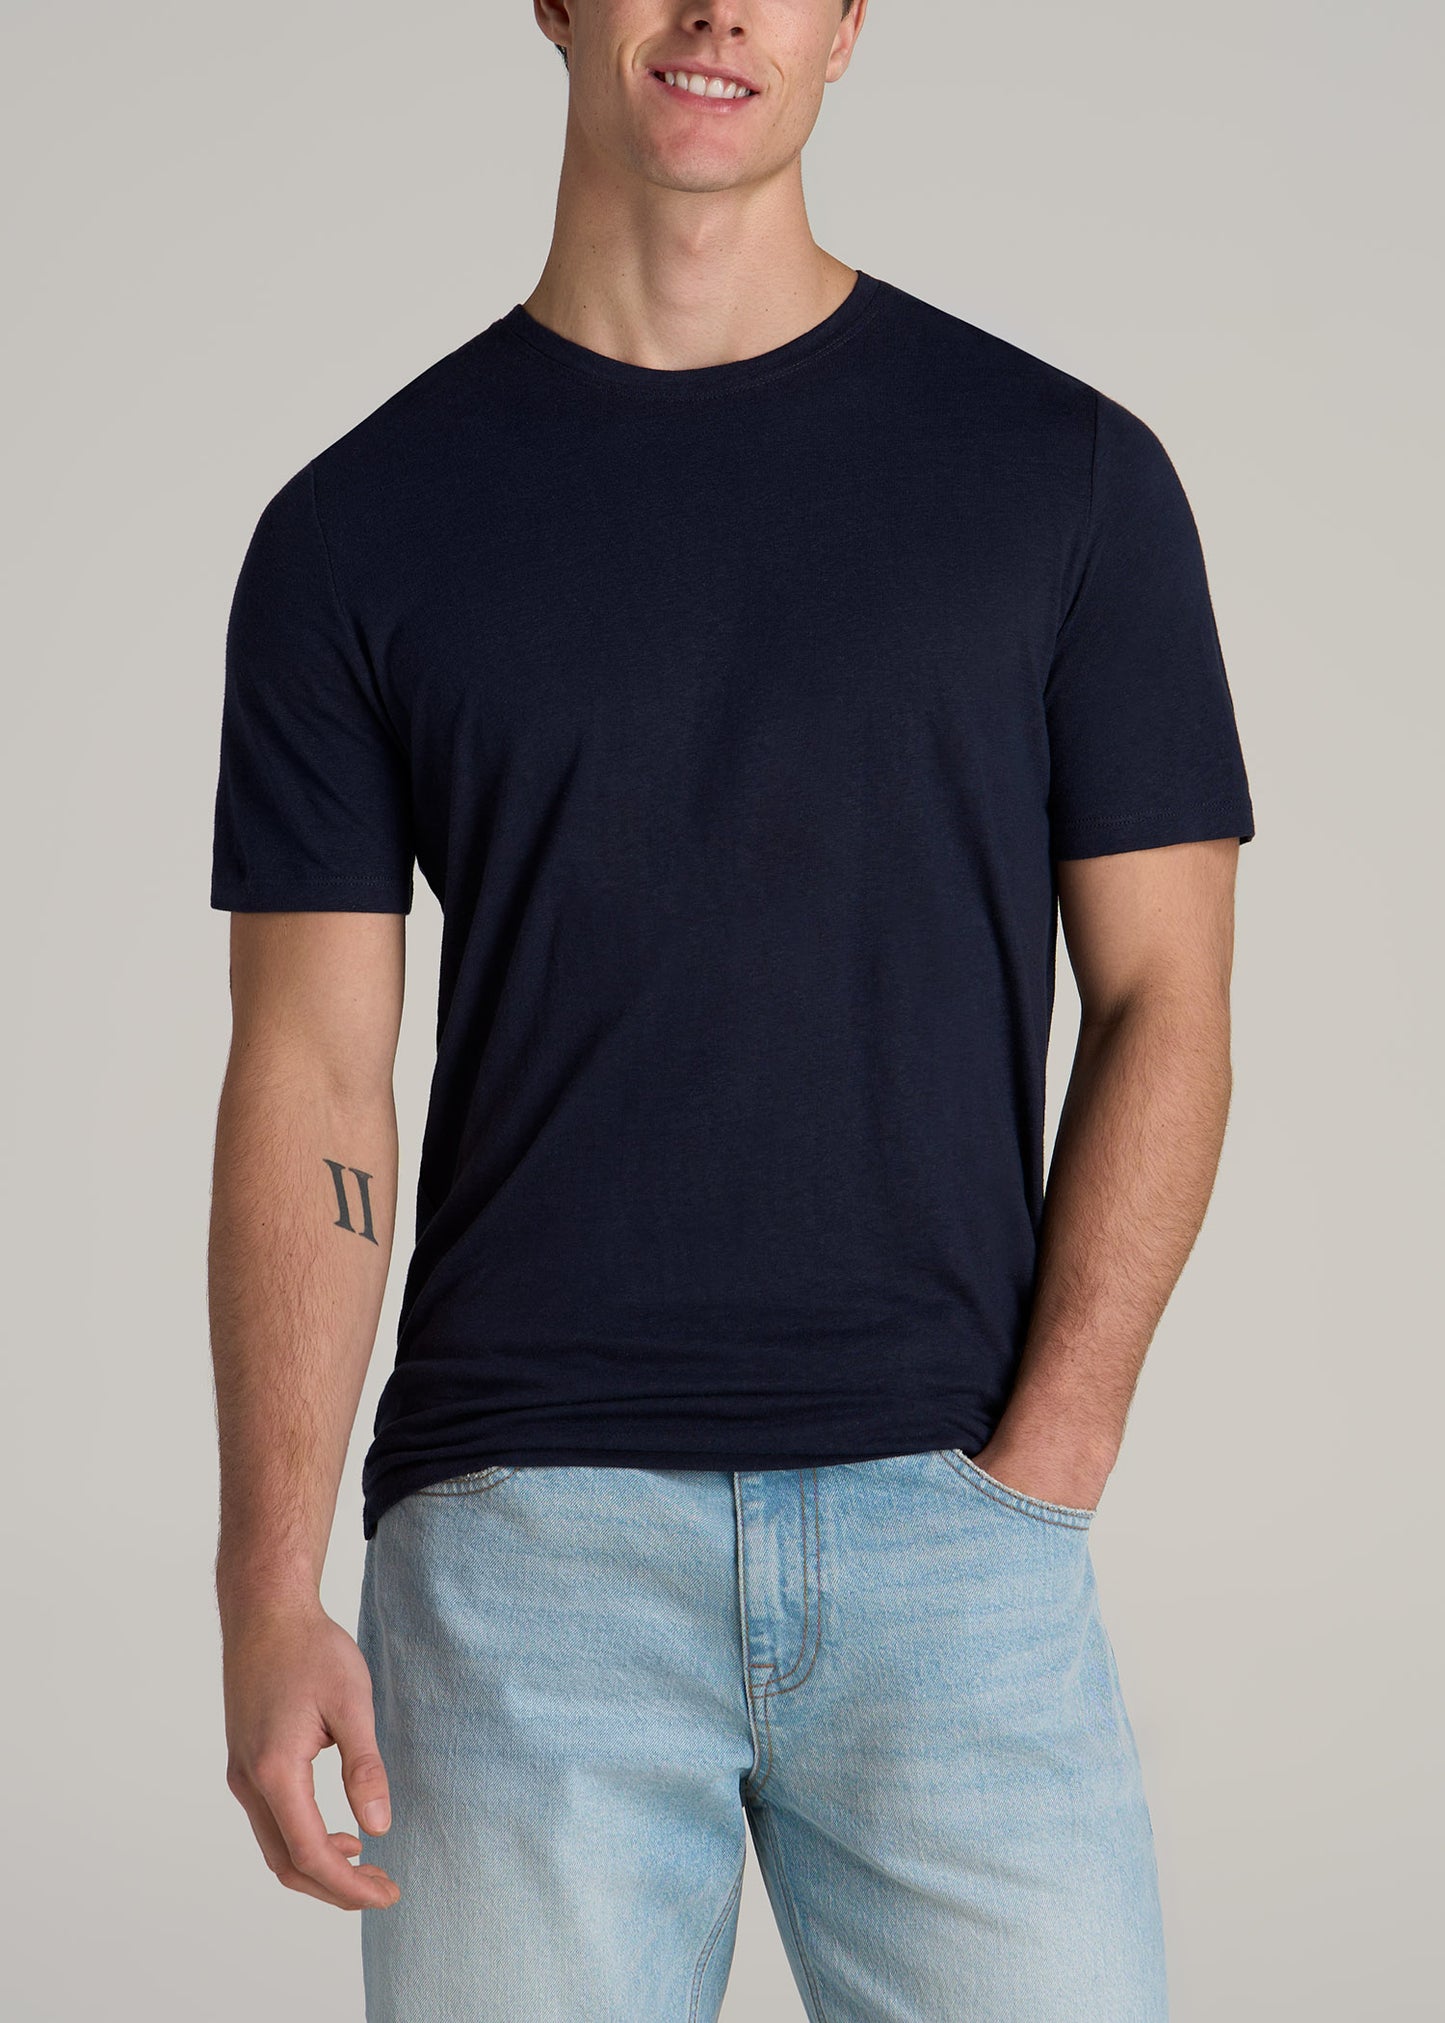 A tall man wearing American Tall's Linen Crewneck T-Shirt for Tall Men in Evening Blue.